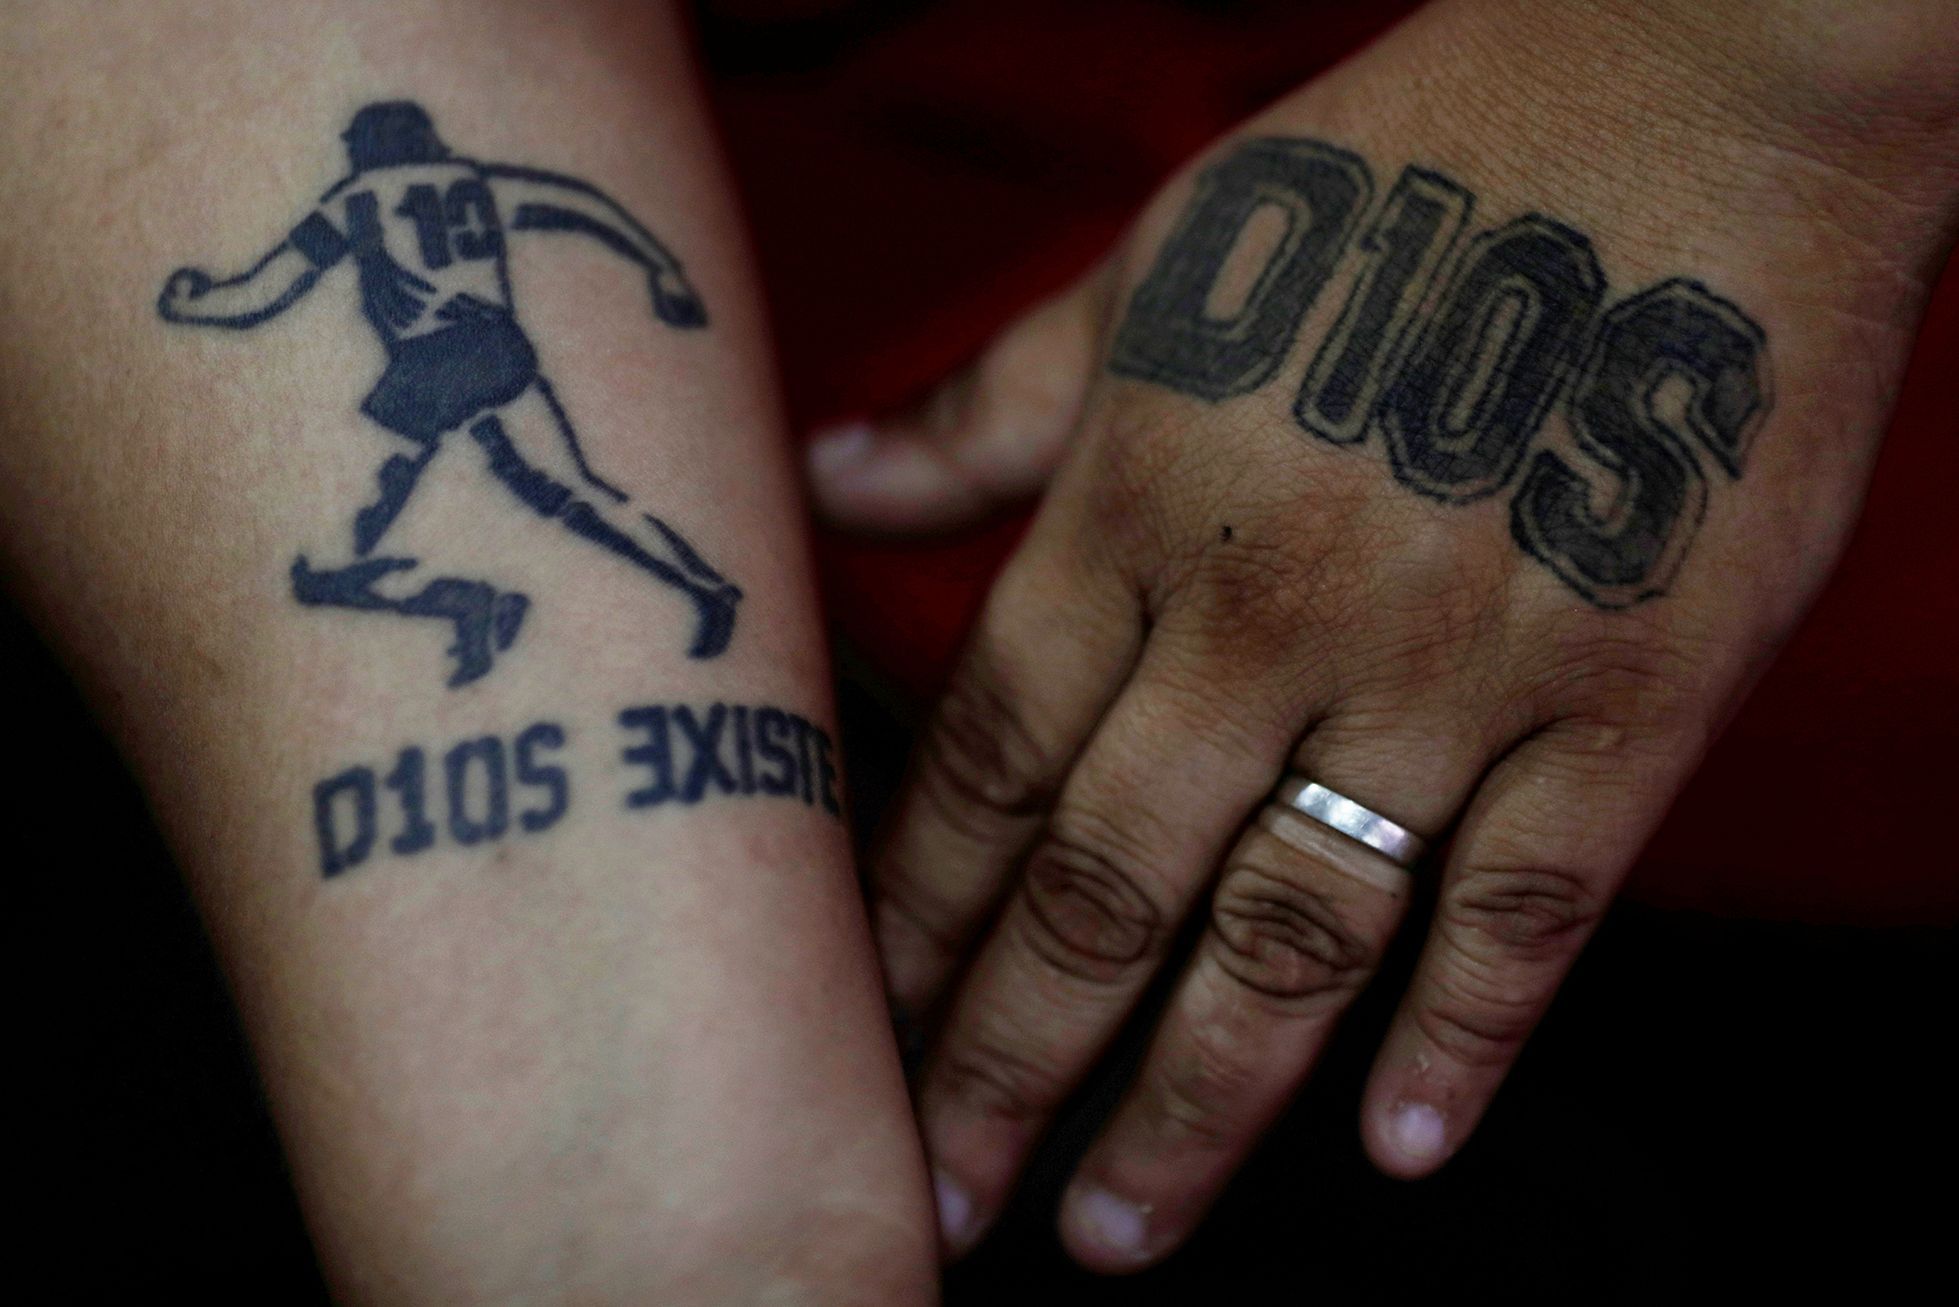 Fotogalerie / Tetováni s láskou k fotbalové ikoně. S těmito lidmi už zůstane Maradona navždy.